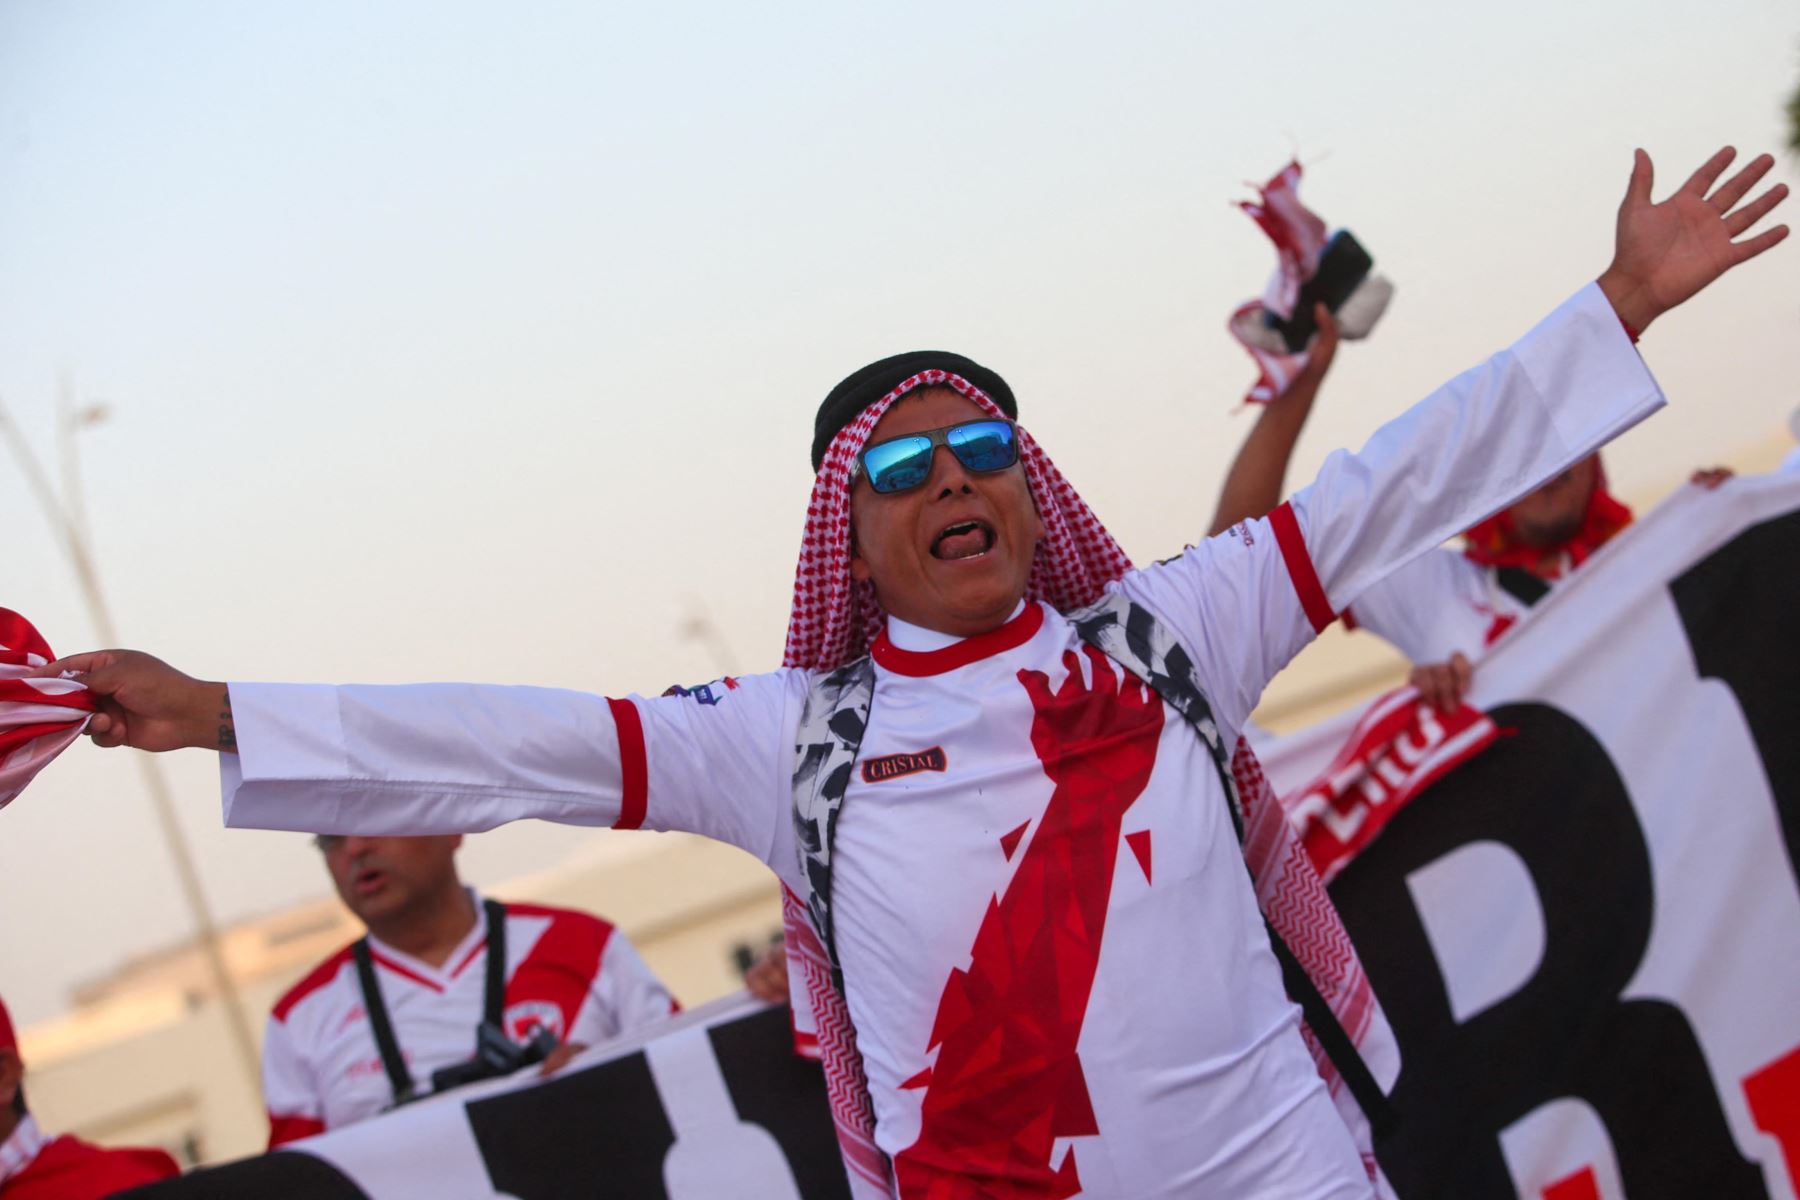 Hinchas de Perú posan para una foto antes del partido de repechaje entre Australia y Perú, en el estadio Ahmed bin Ali en la ciudad qatarí de Ar-Rayyan. Foto: AFP